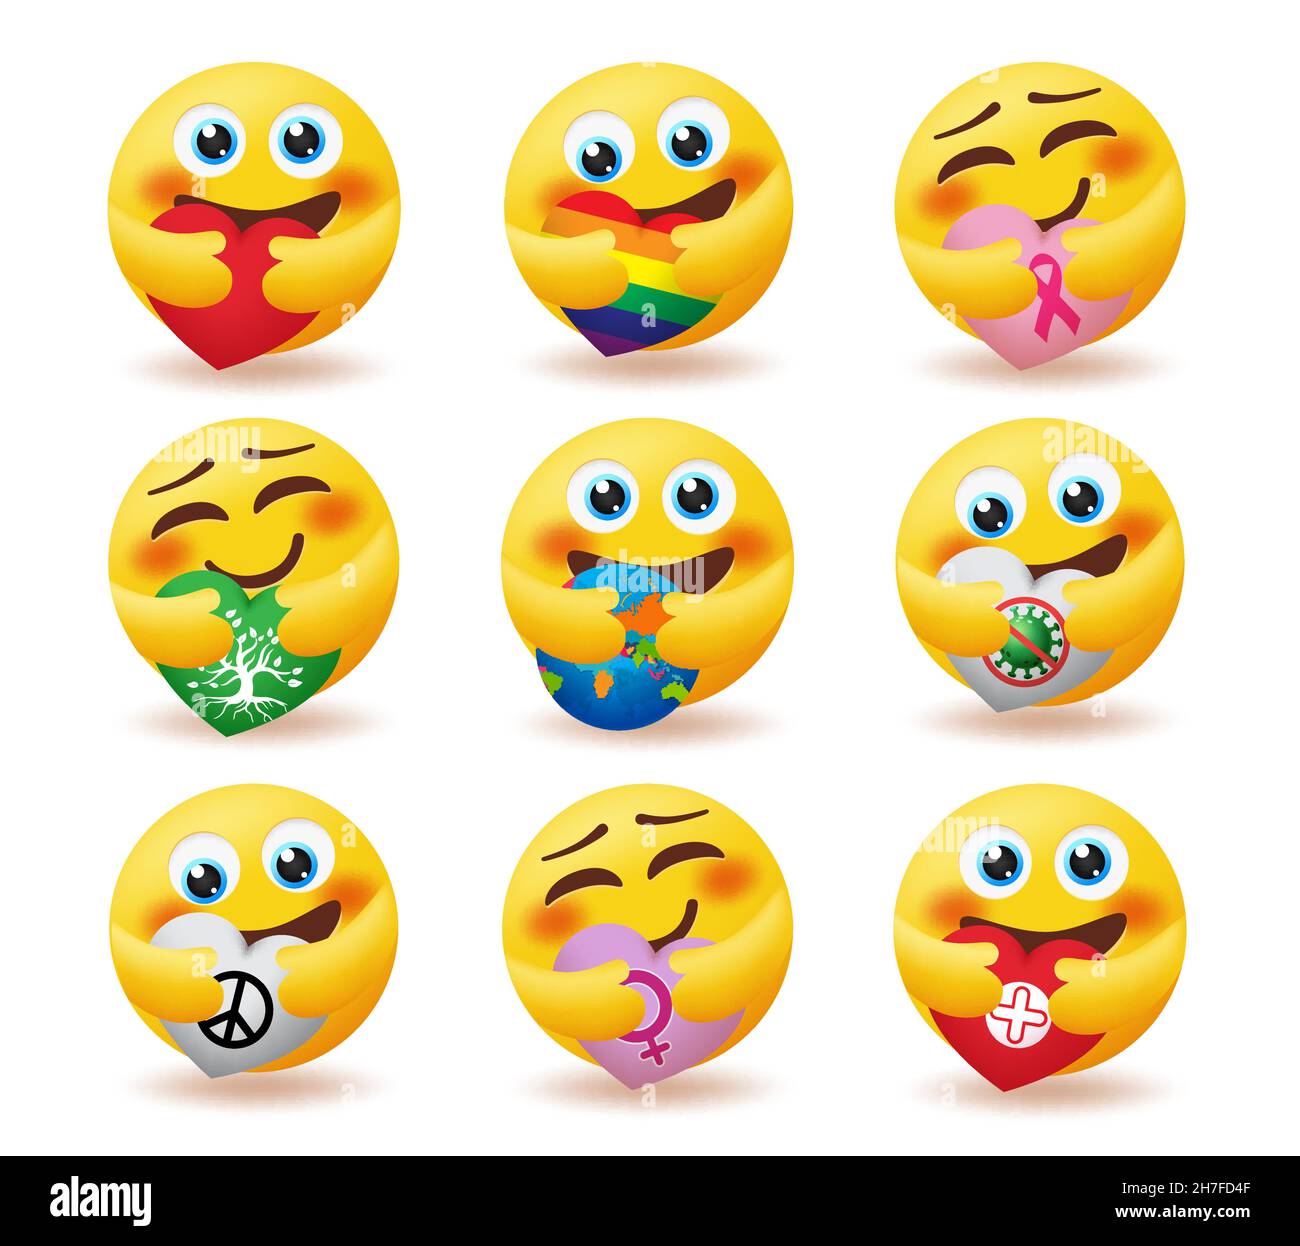 Ensemble de vecteurs d'émoticônes de soin d'emoji.Émoticônes smiley  personnages dans la posture de hug avec les éléments de coeur du monde, la  paix et la nature pour emojis caractère bienveillant Image Vectorielle